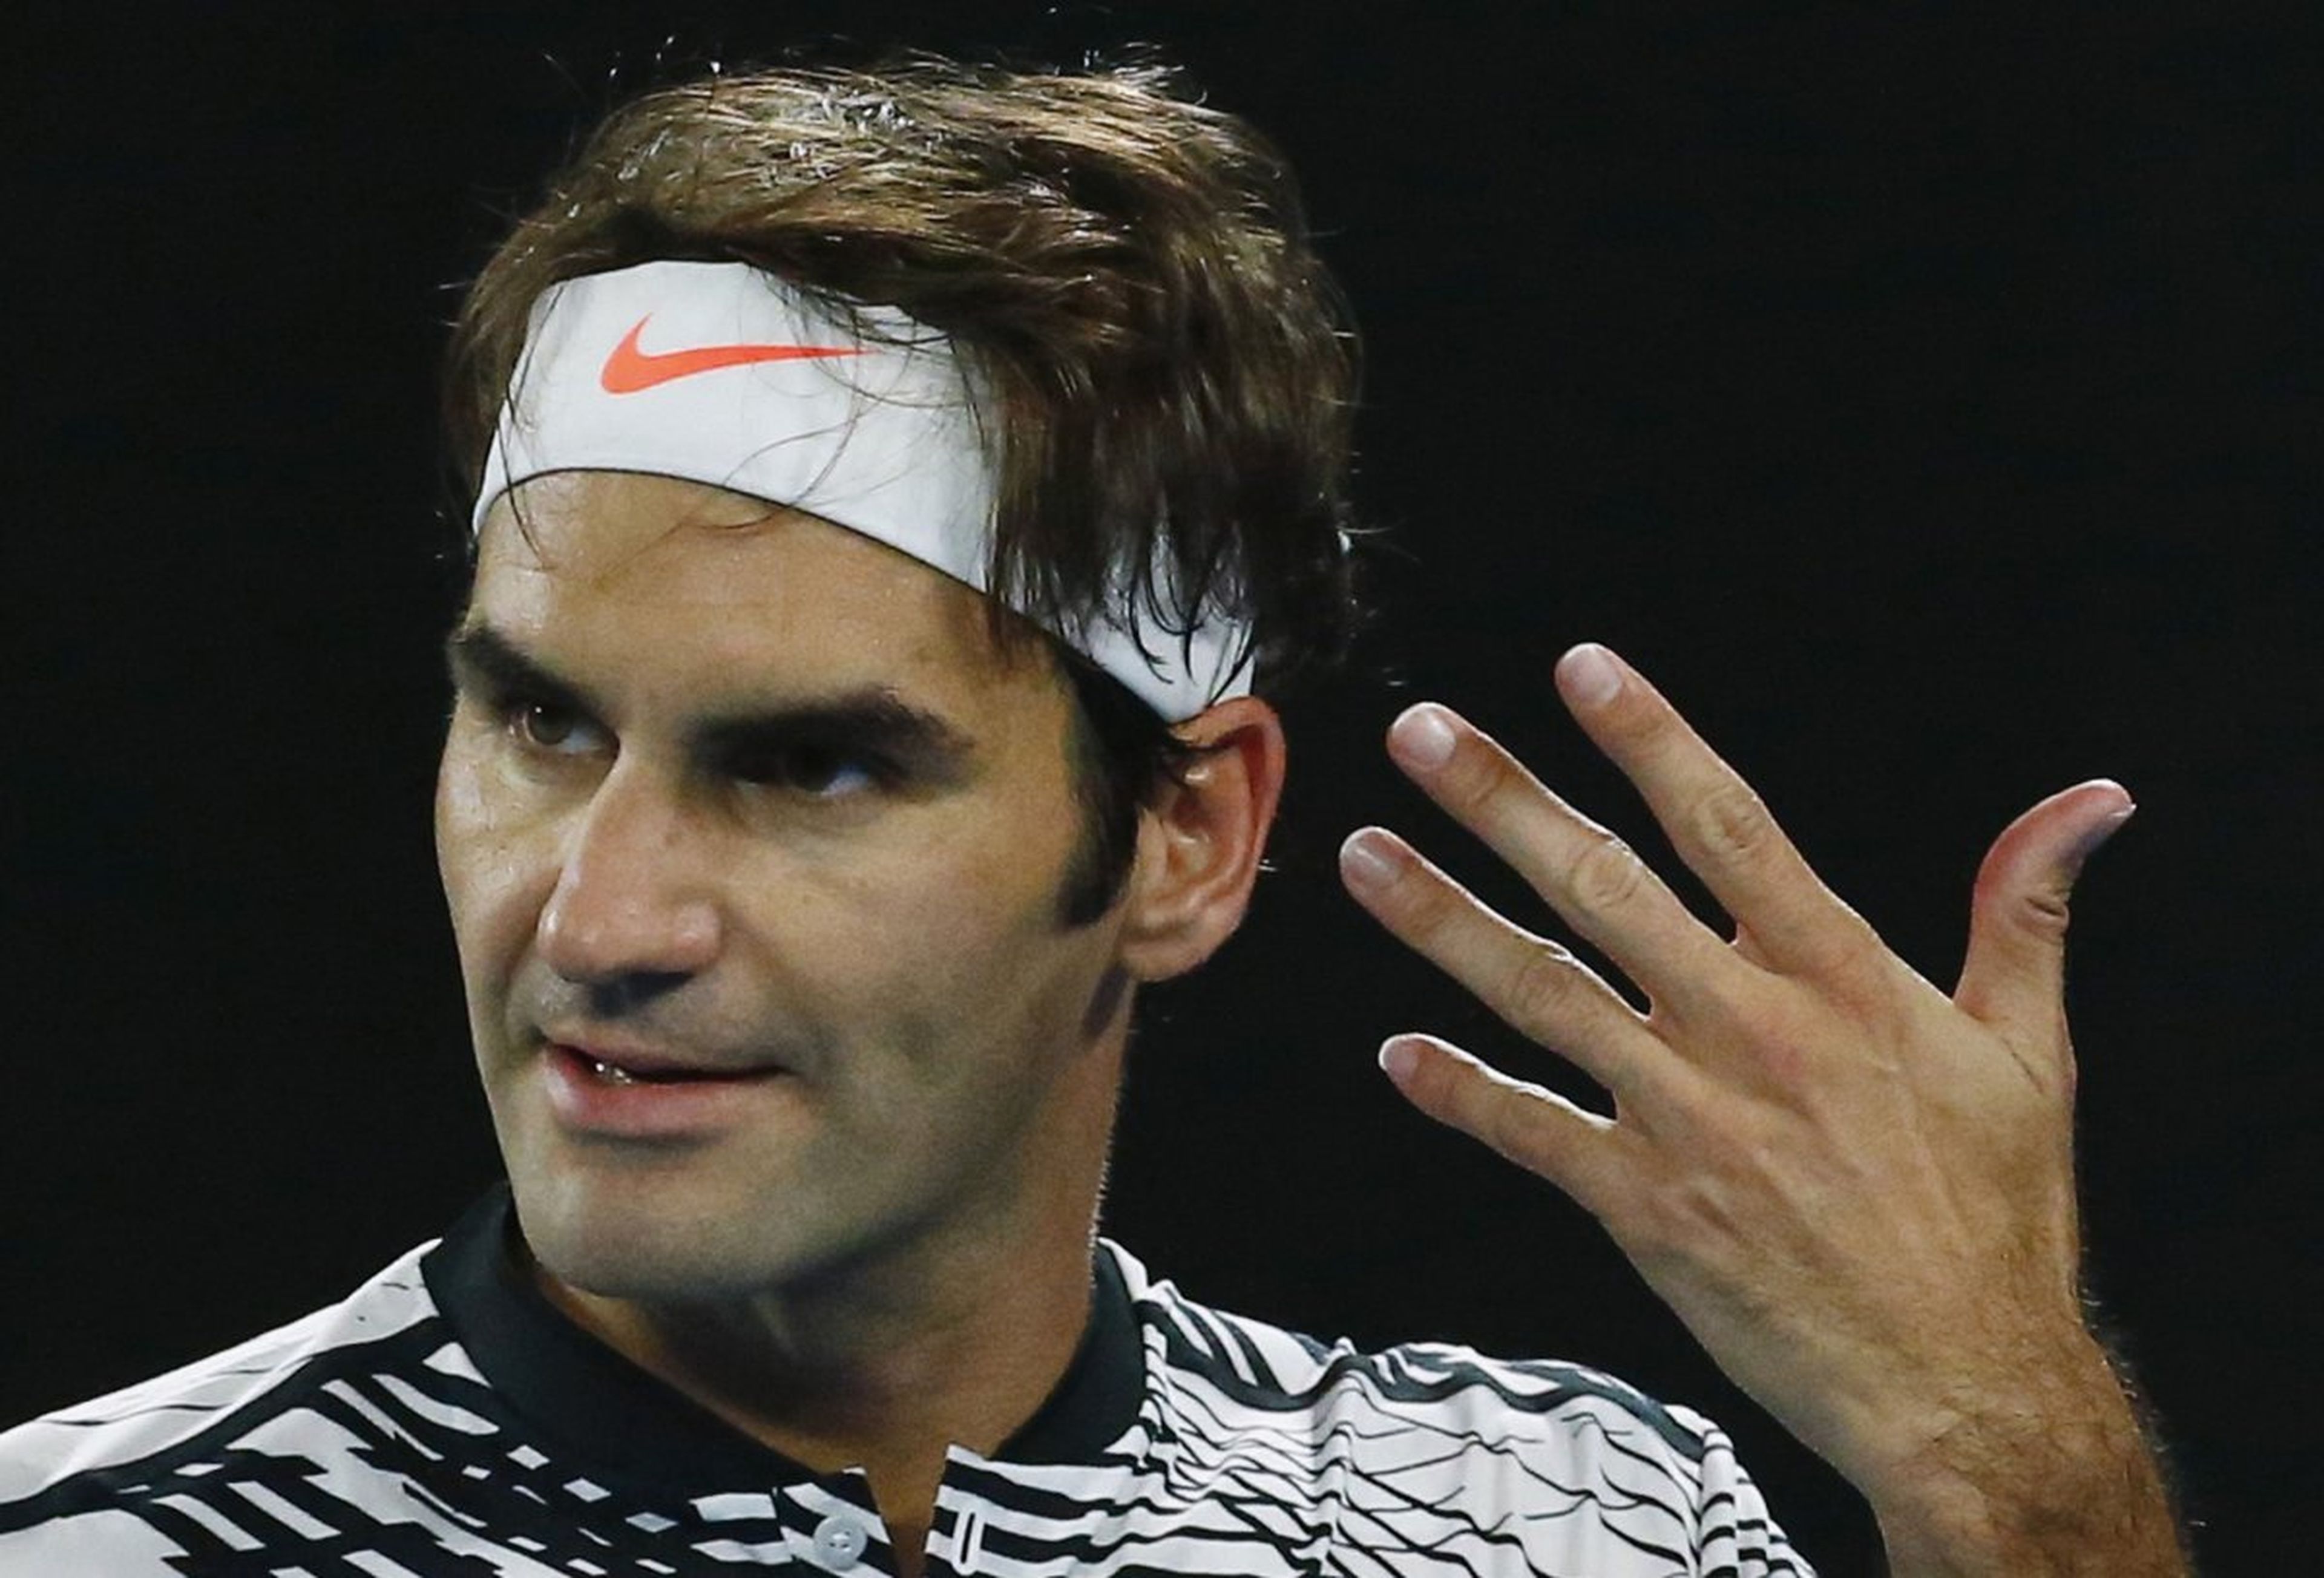 [Re] El jugador de tenis Roger Federer celebra un punto.